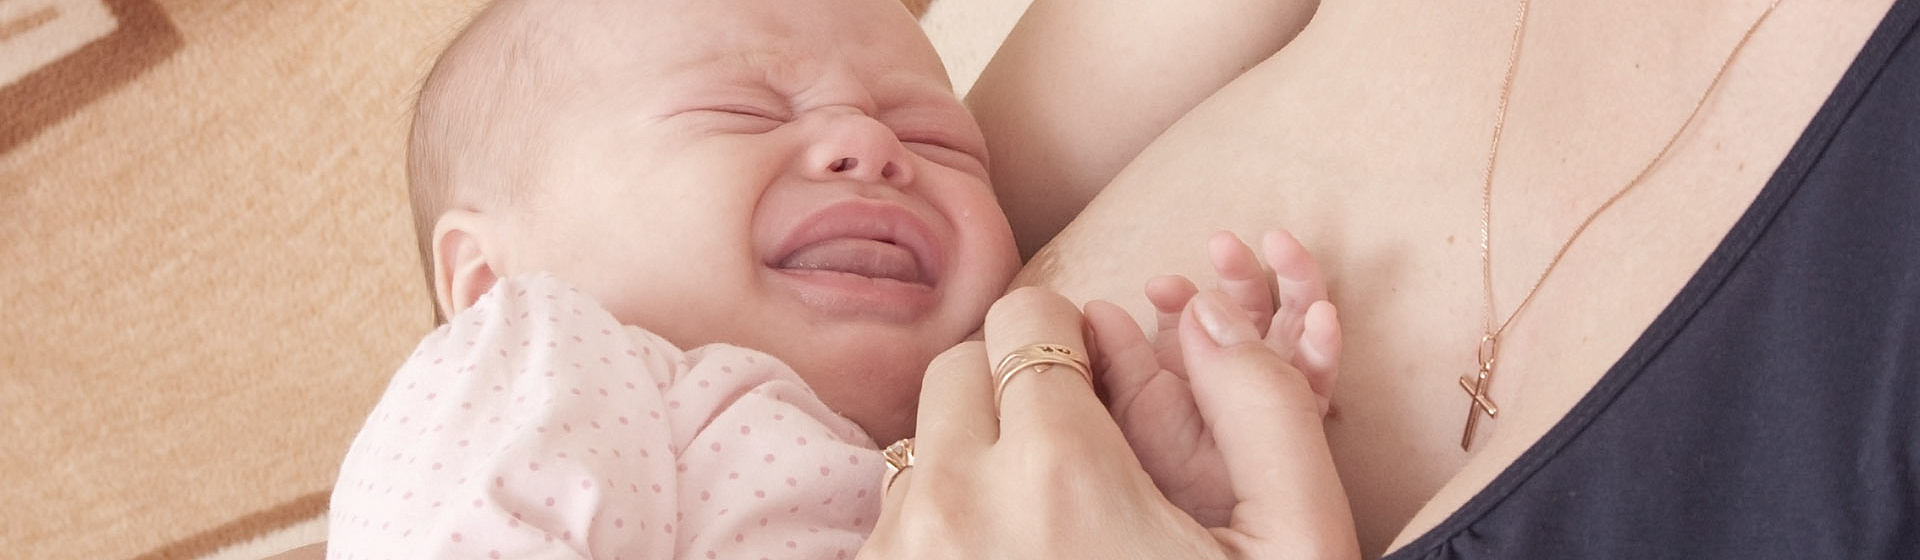 Почему малыш отказывается от грудного молока. Подборка статей о лактации